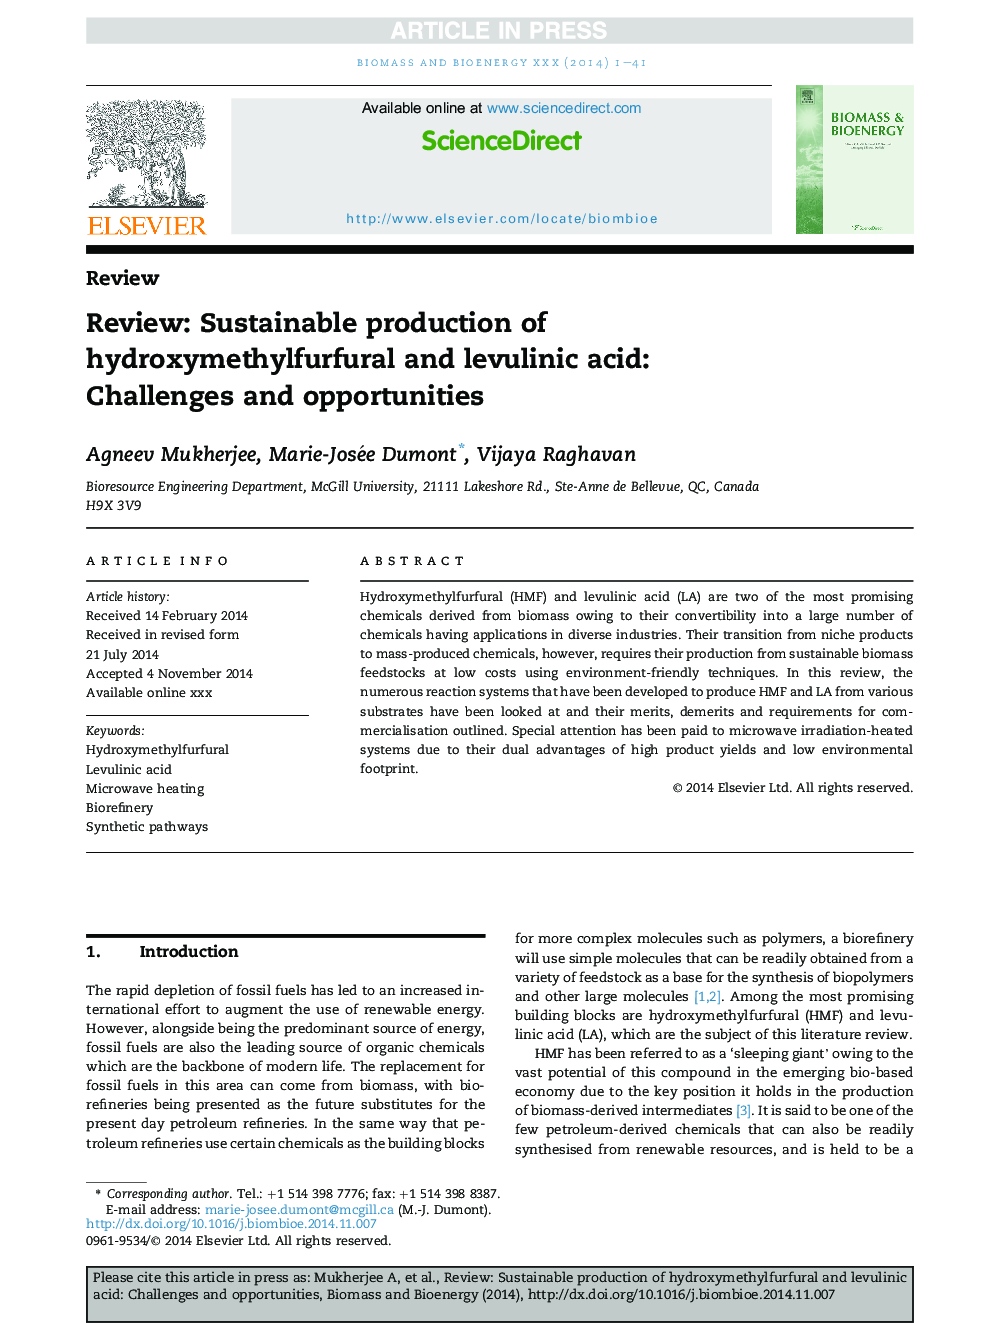 بررسی: تولید پایدار هیدروکسی متیل فورفورال و اسید لووولینیک: چالش ها و فرصت ها 